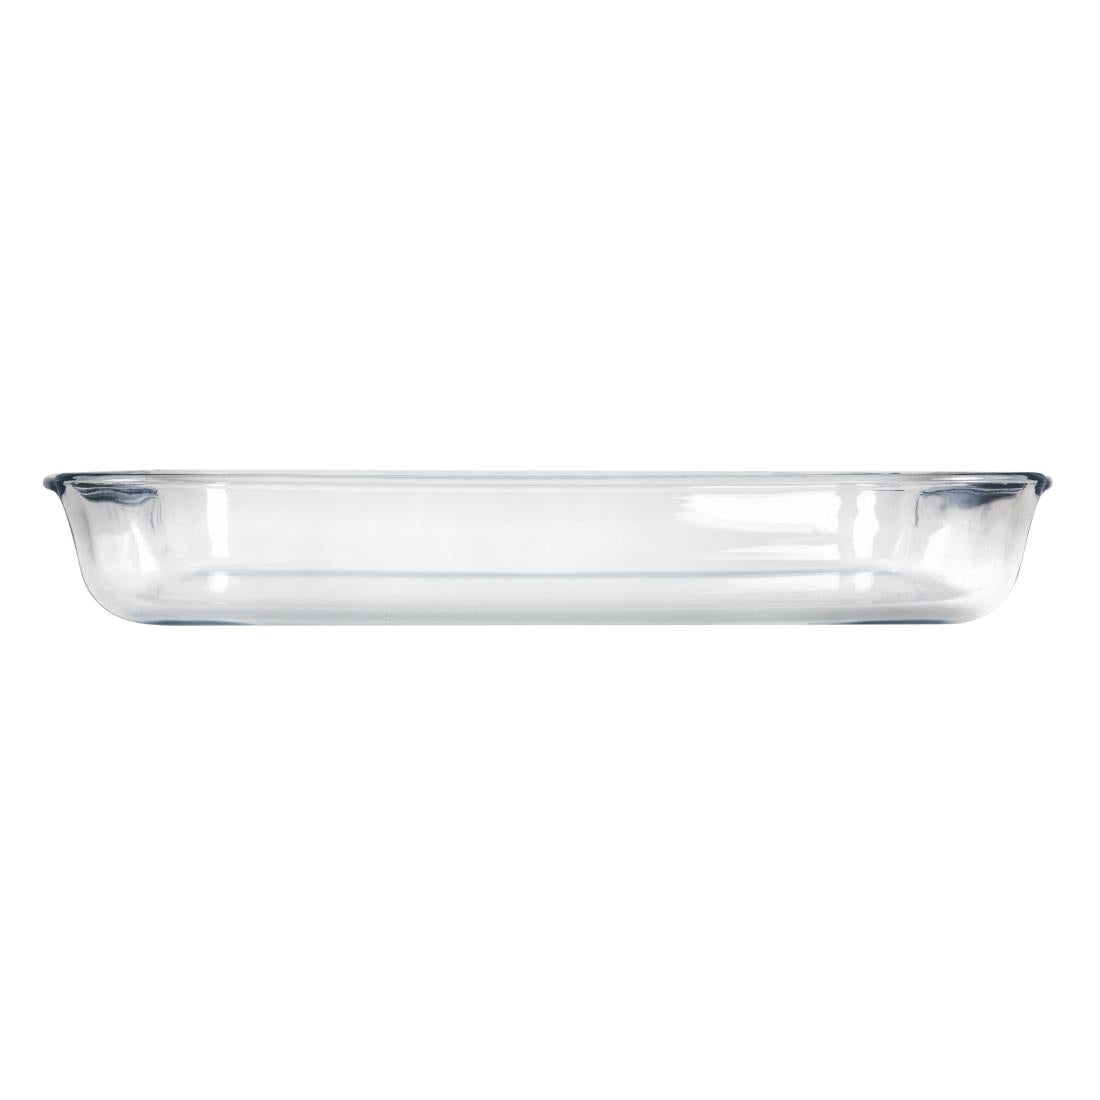 GD031 Pyrex Rectangular Glass Roaster Dish 400mm JD Catering Equipment Solutions Ltd